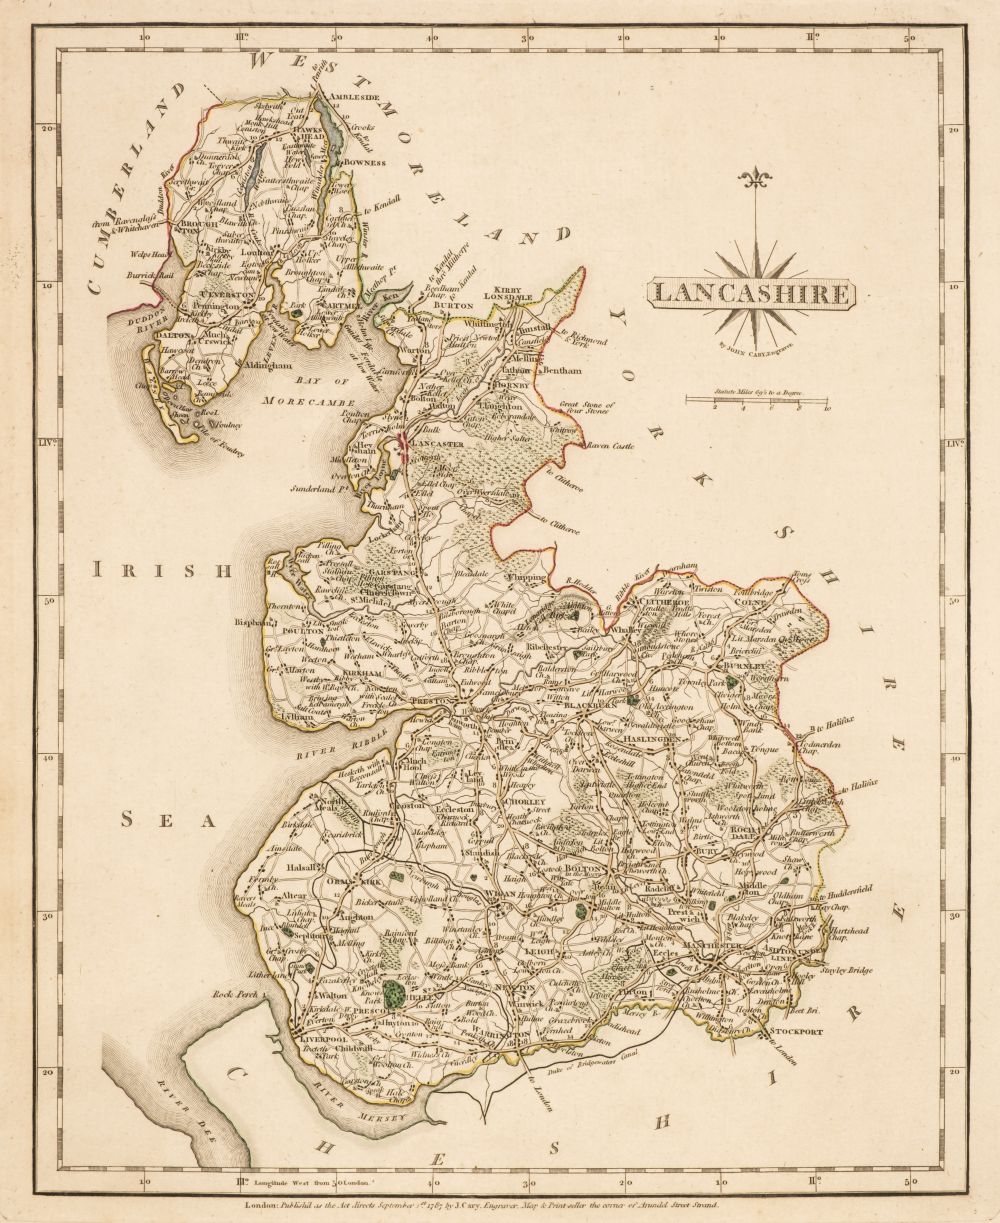 Cary (John). Cary's New and Correct English Atlas..., Jany. 1st. 1792